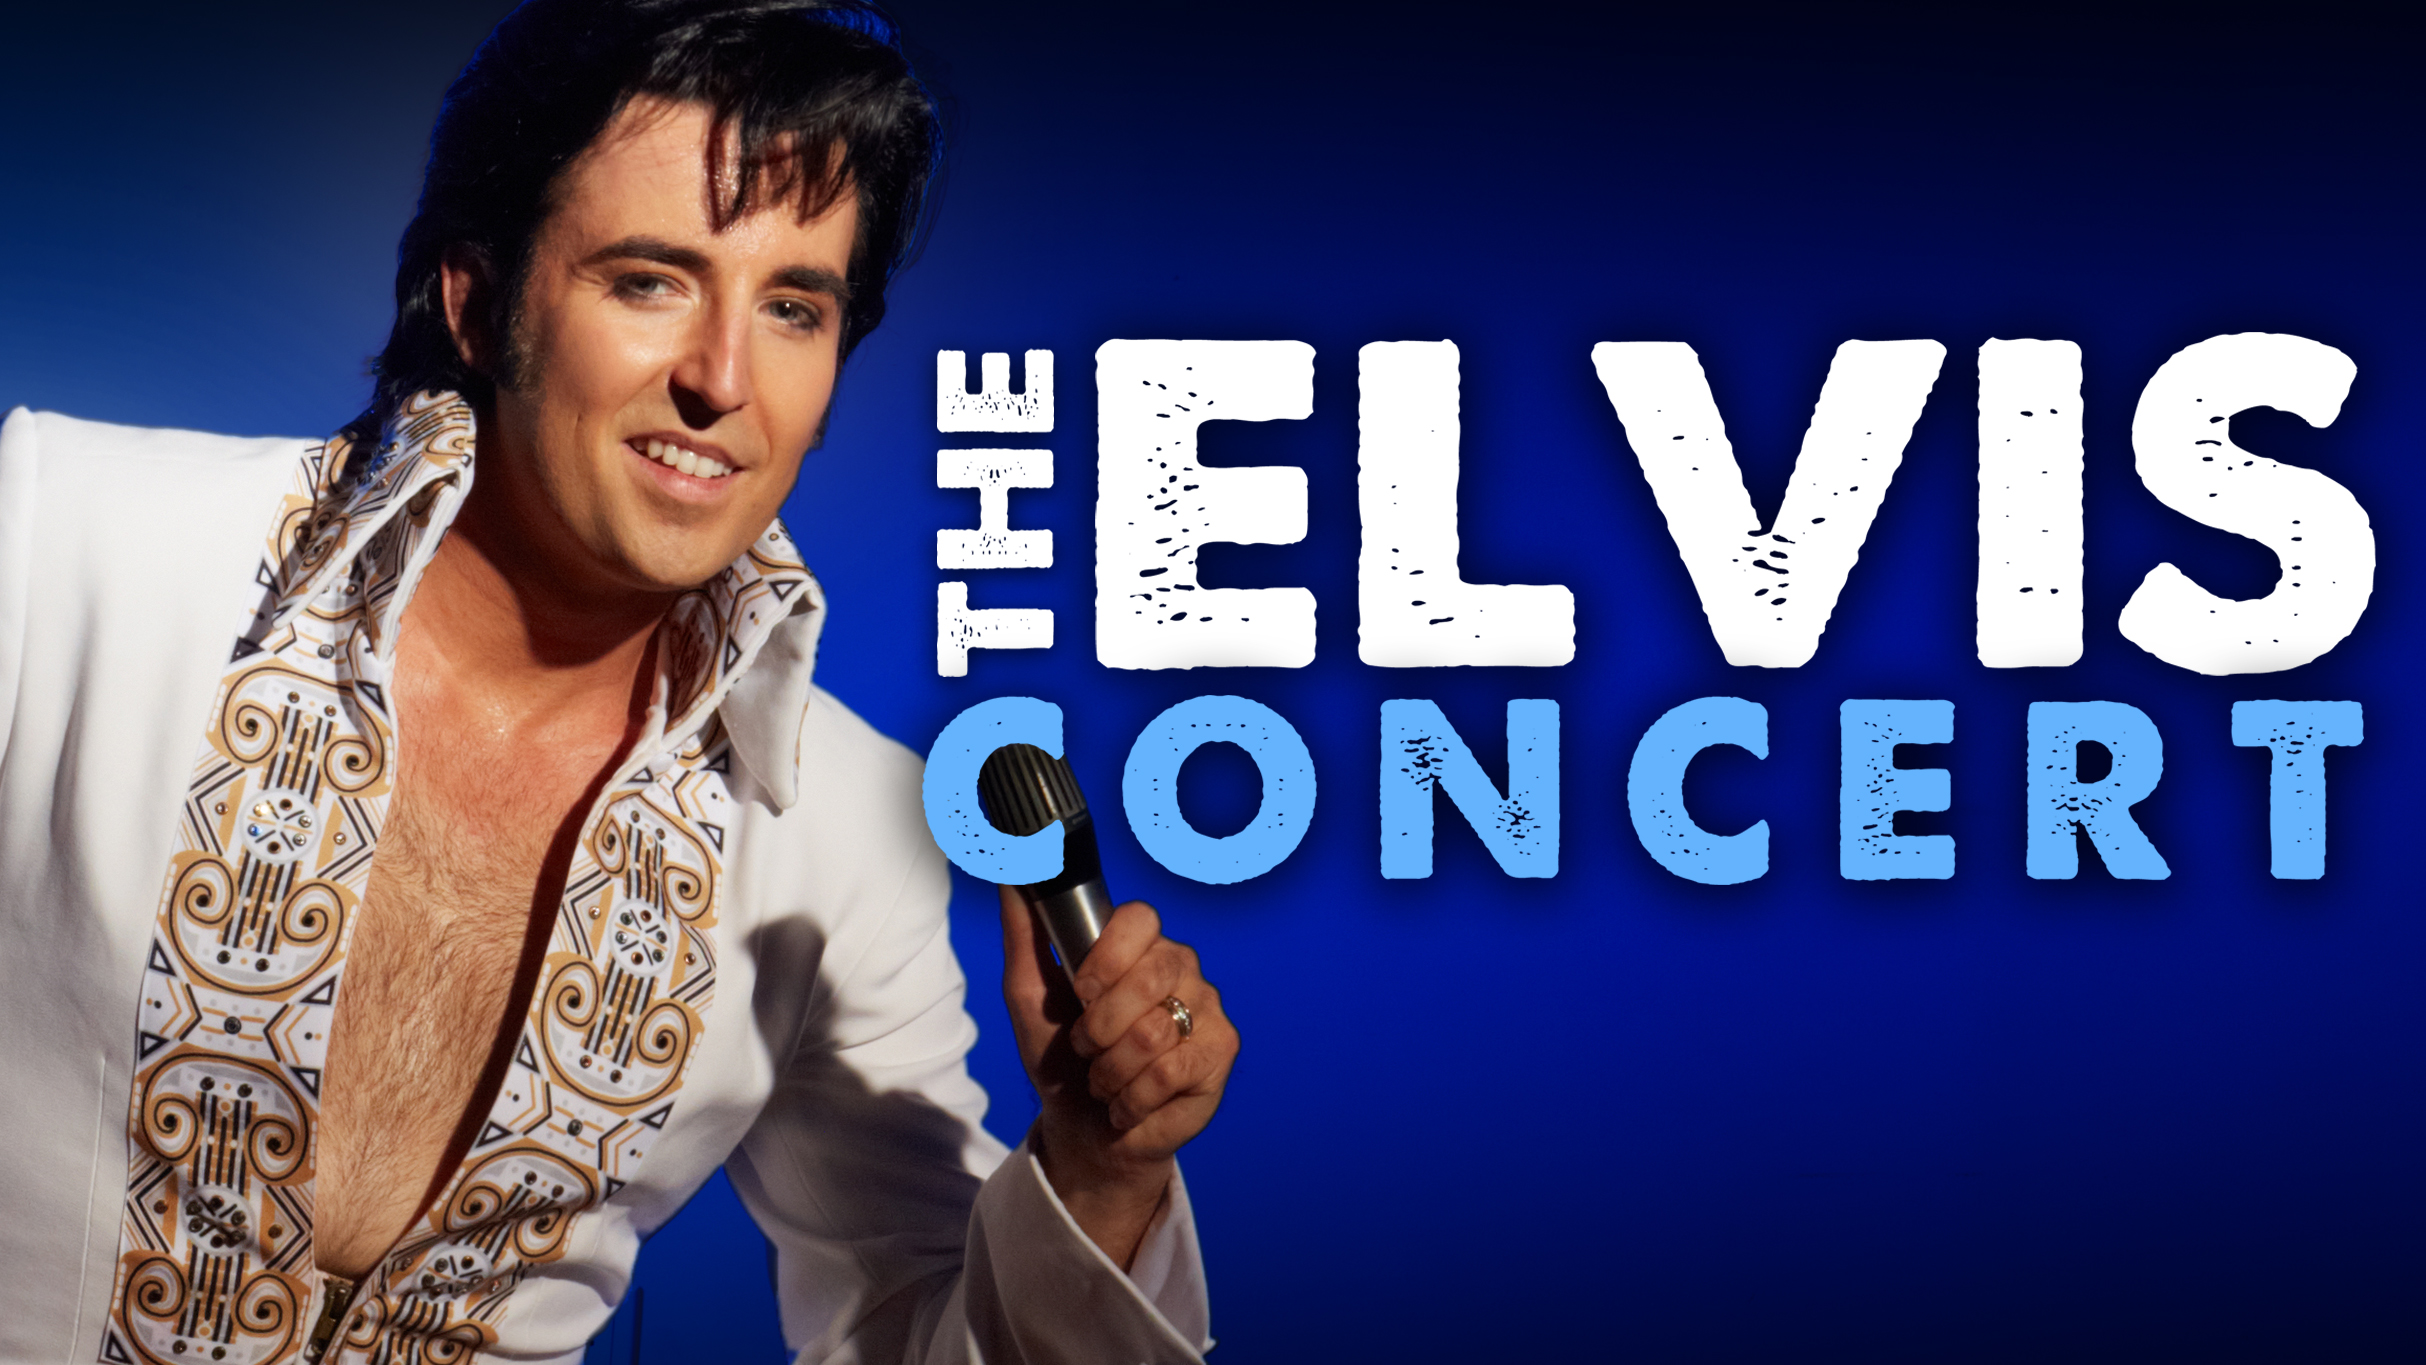 The Elvis Concert